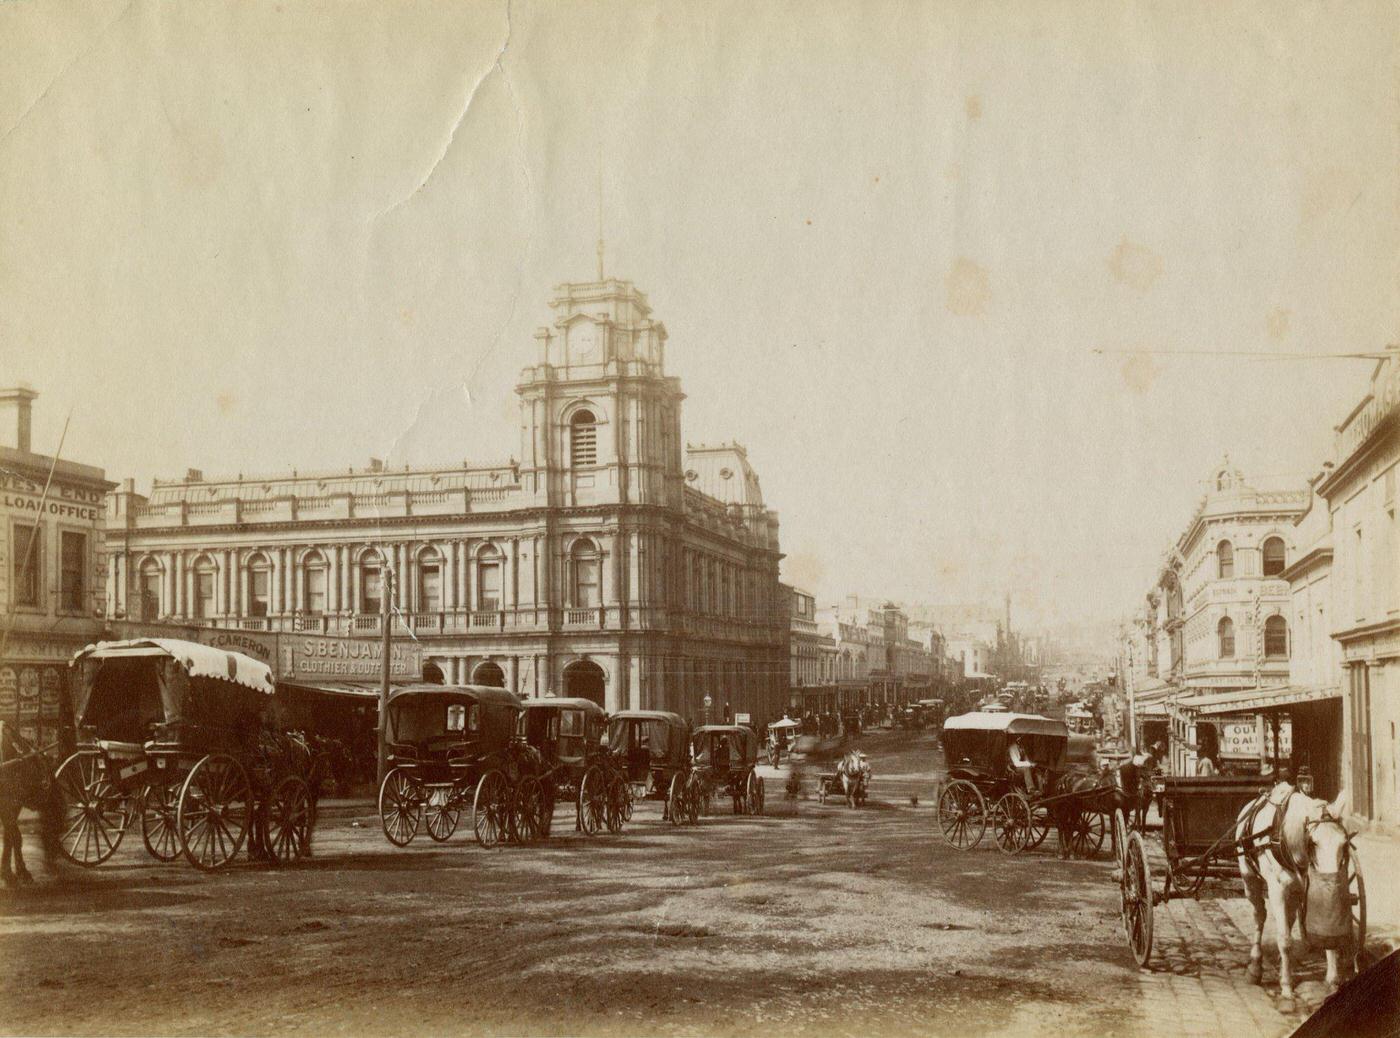 Melbourne General Post Office on Elizabeth and Bourke Street, Melbourne, 1880